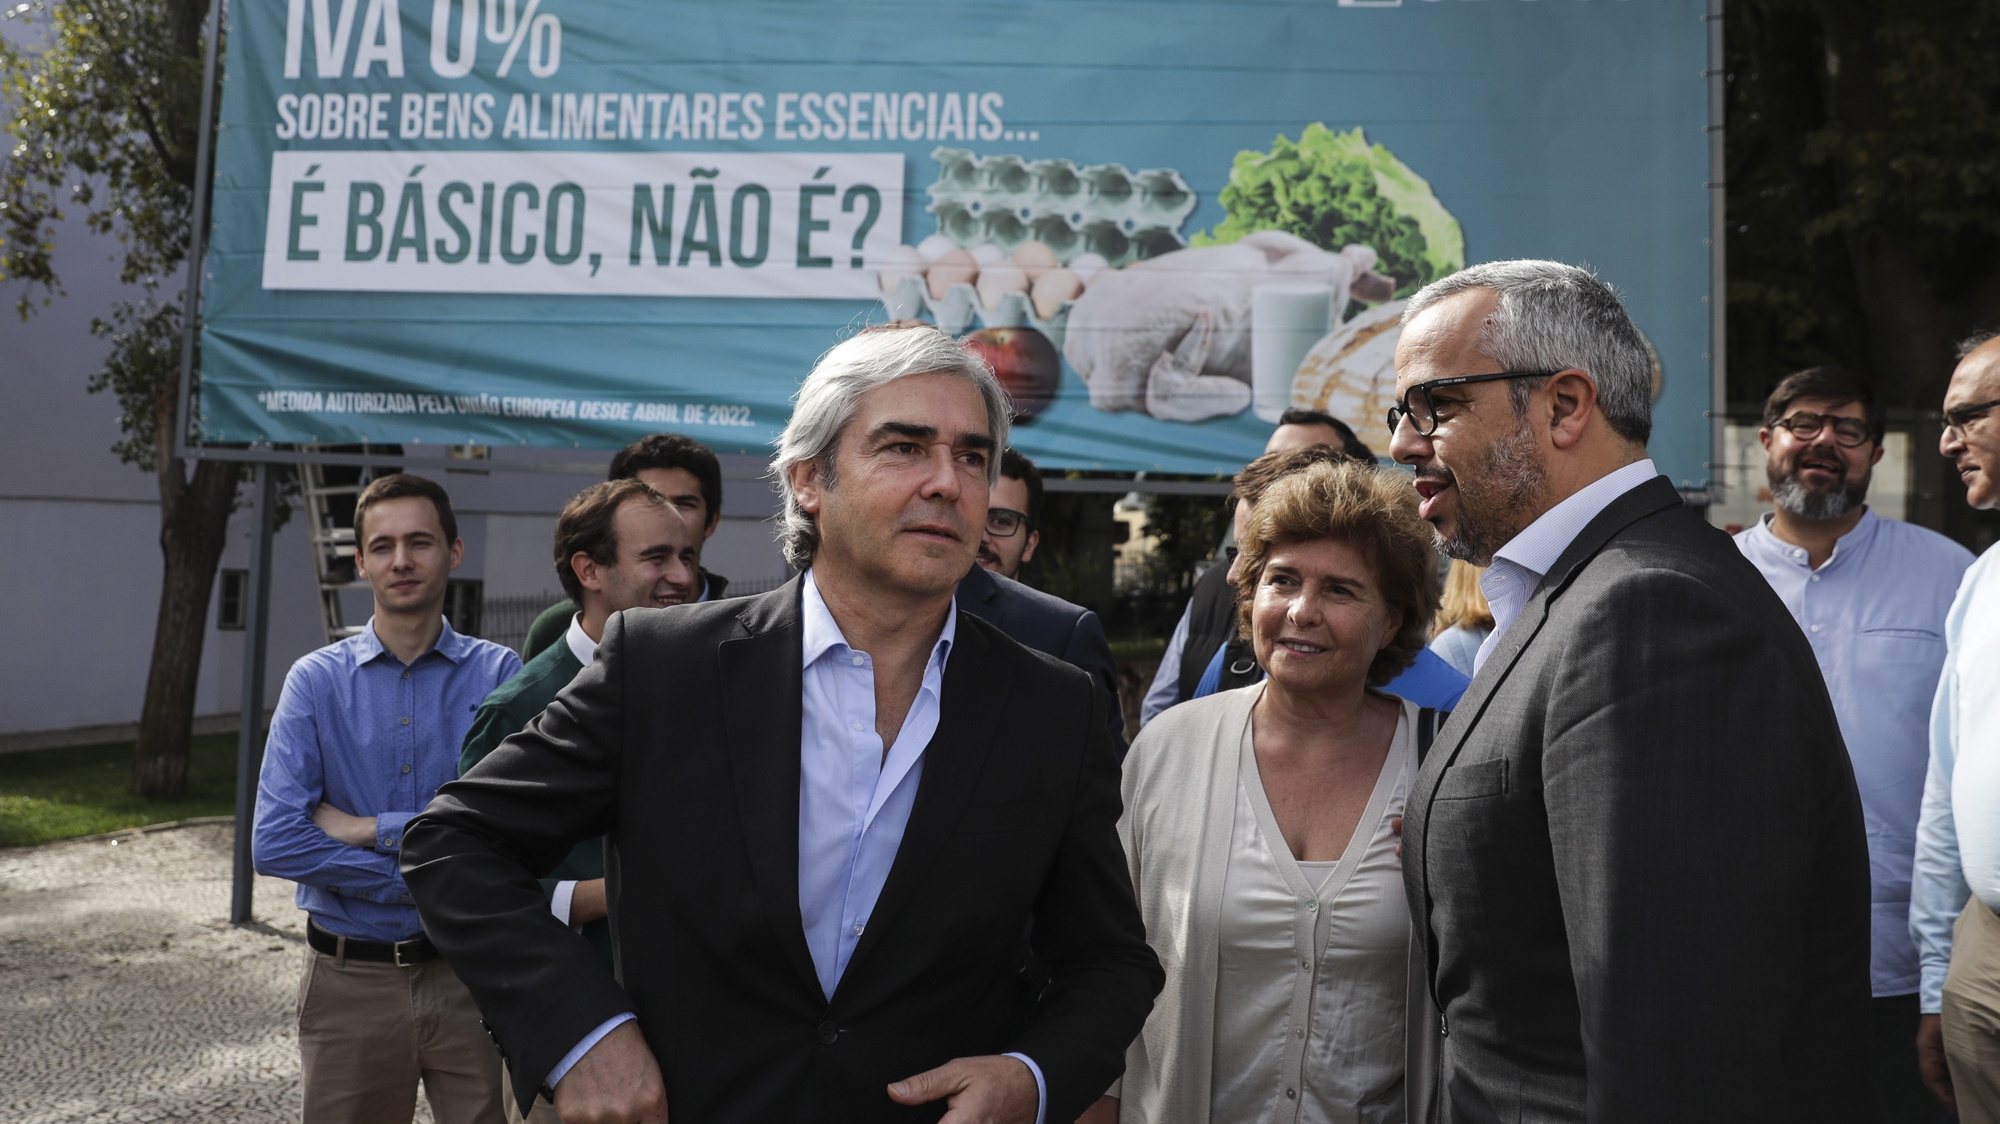 O presidente do CDS, Nuno Melo, assistiu à colocação do primeiro cartaz sobre o OE 2023 em frente à Assembleia da República em Lisboa, 26 de outubro de 2022. TIAGO PETINGA/LUSA